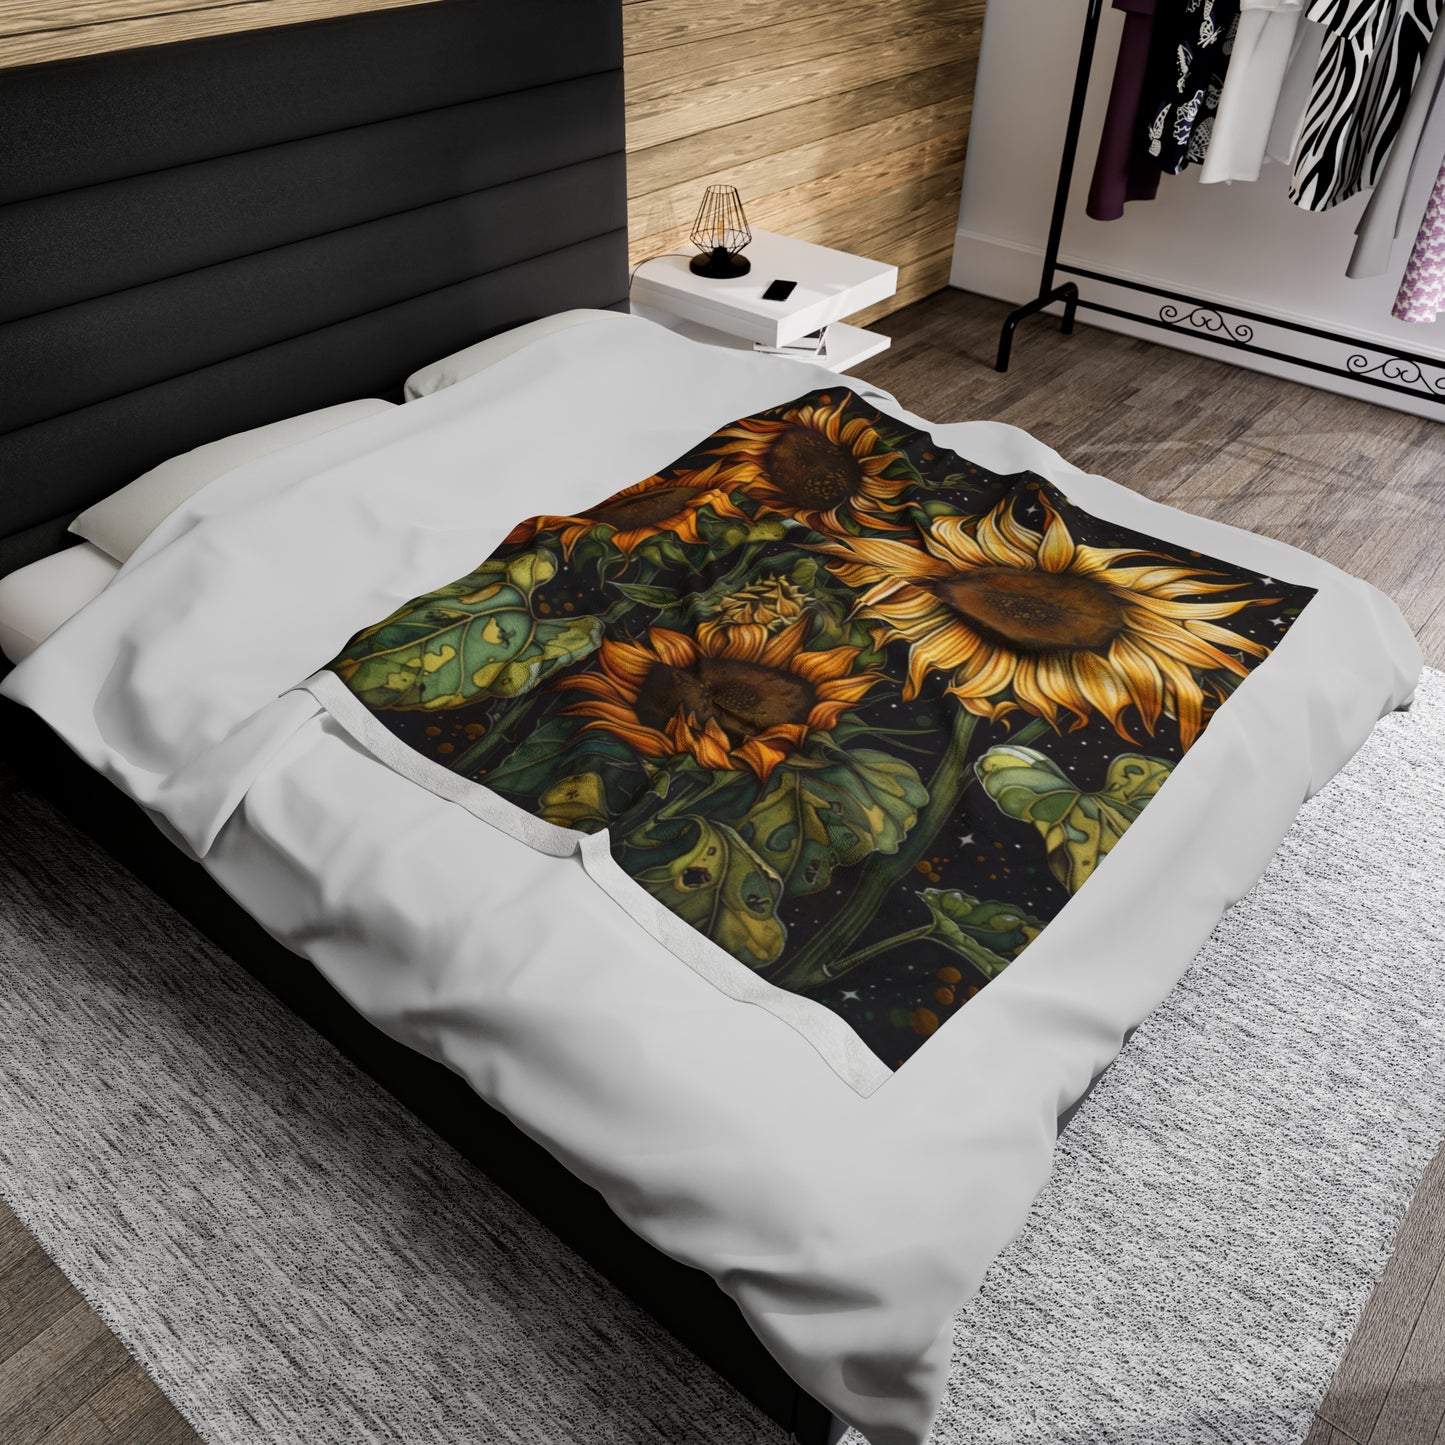 Sunflower Velveteen Plush Blanket